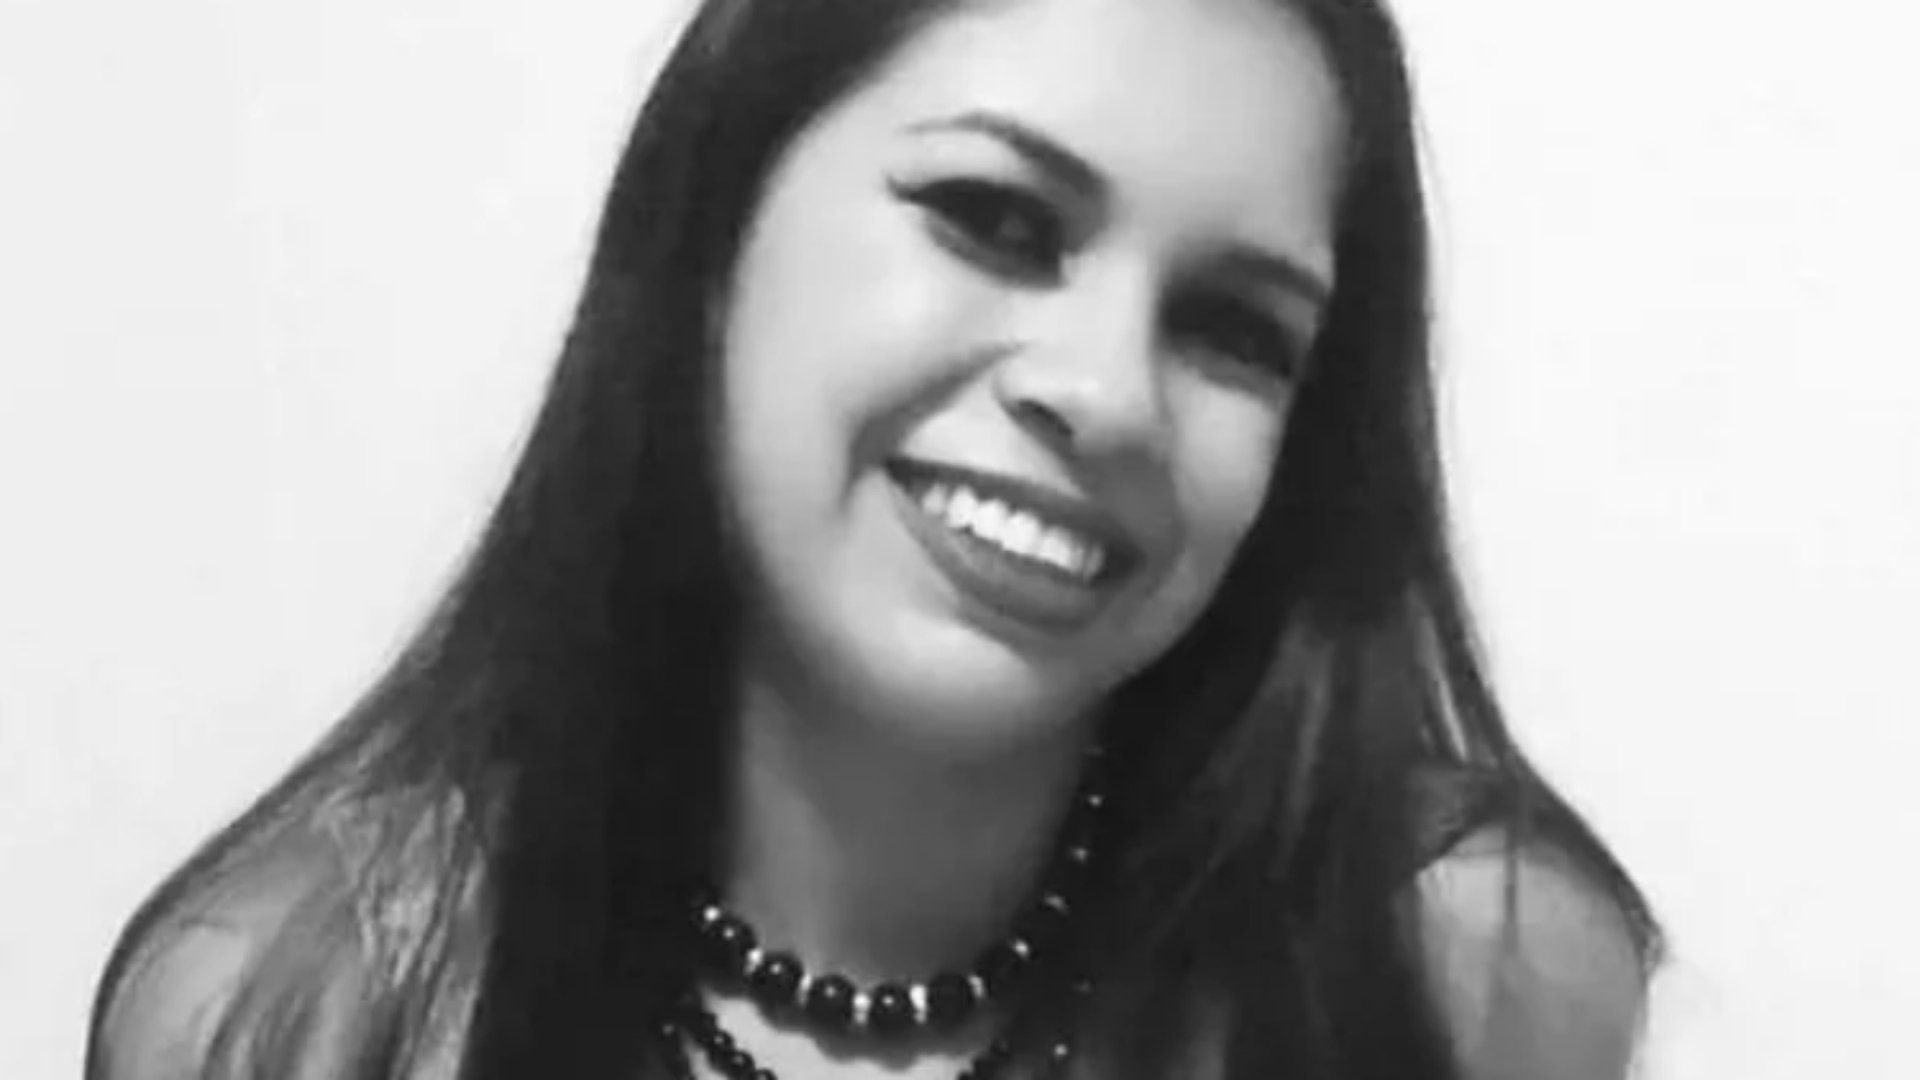 A jovem Diannes Maria Silva Marques, de 25 anos, foi assassinada na noite deste sábado (23) na frente de familiares